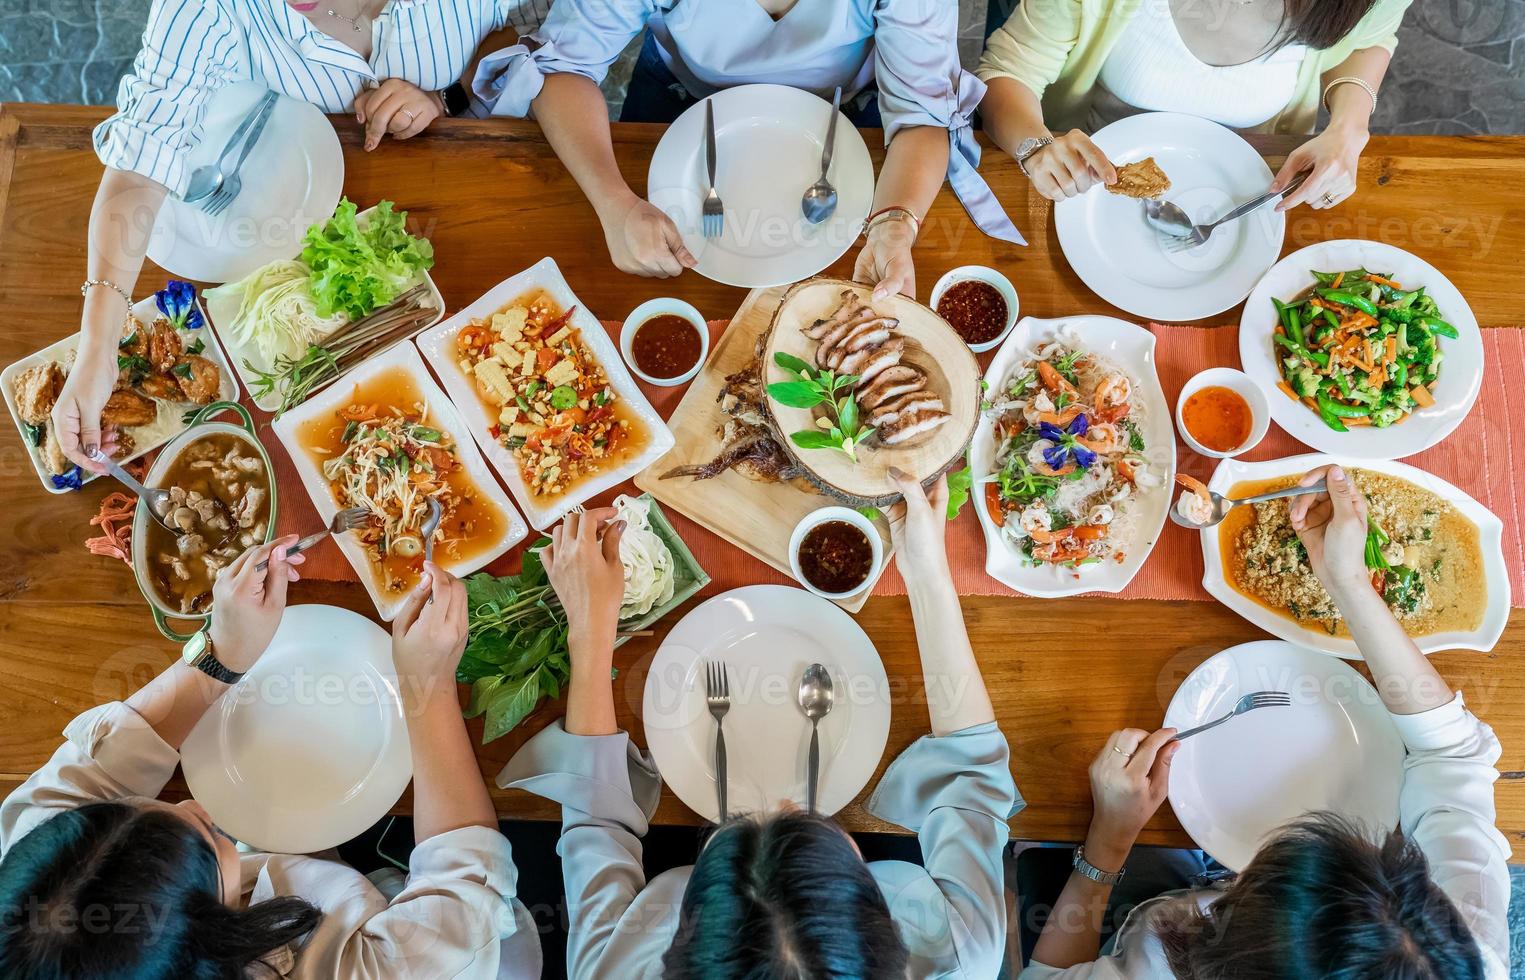 vista superior da comida local tailandesa, como salada picante de mamão somtum, carne de porco grelhada, tomyum, caril de legumes e camarão são dispostos na mesa de madeira. foto